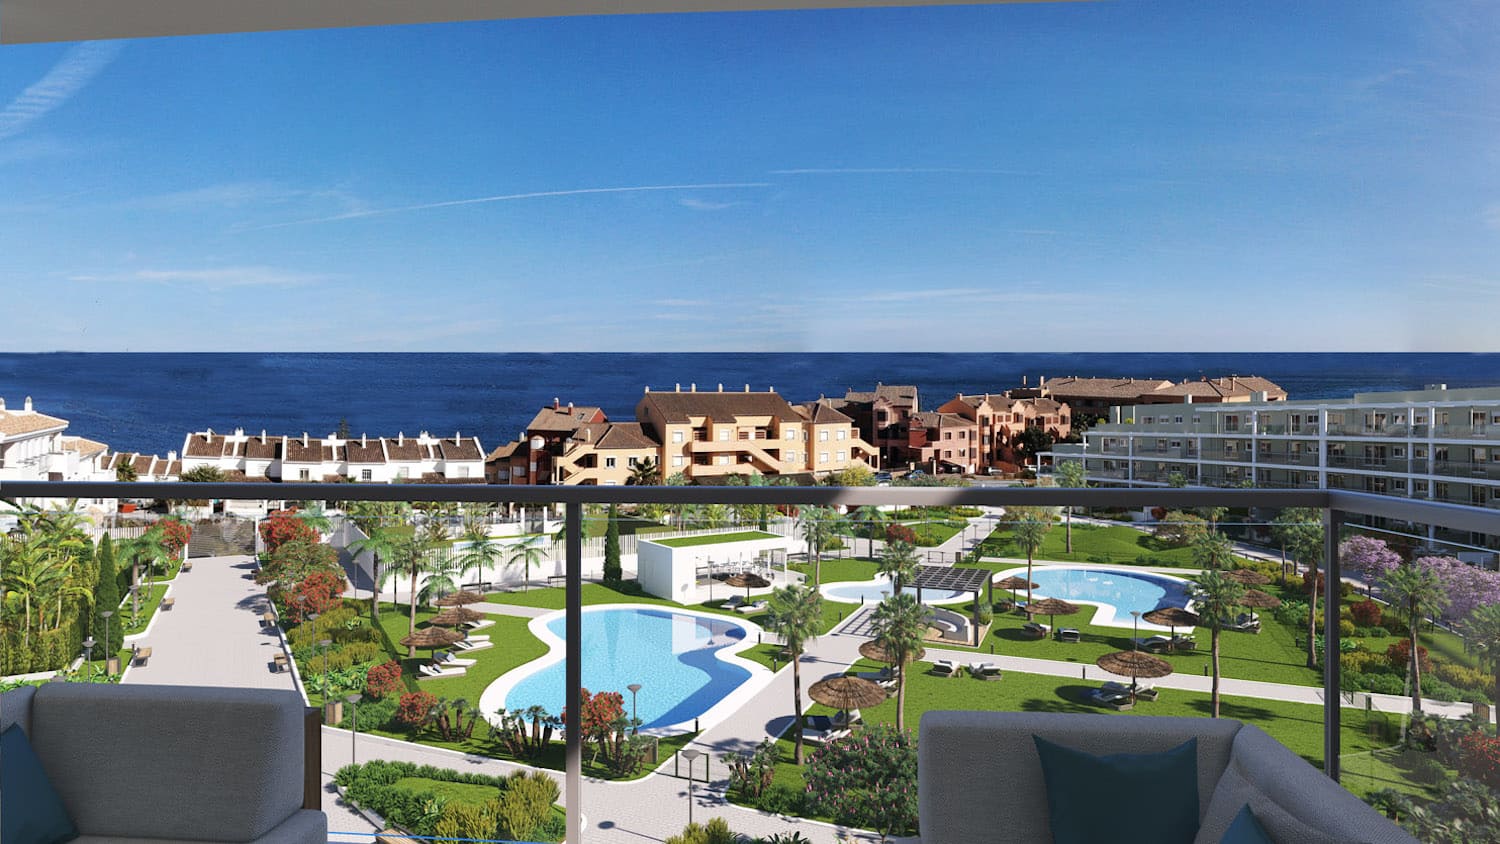 In vendita al mare a Manilva! A partire da 244.000€ Appartamenti con 2 e 3 camere da letto. A 3 minuti dalla spiaggia.